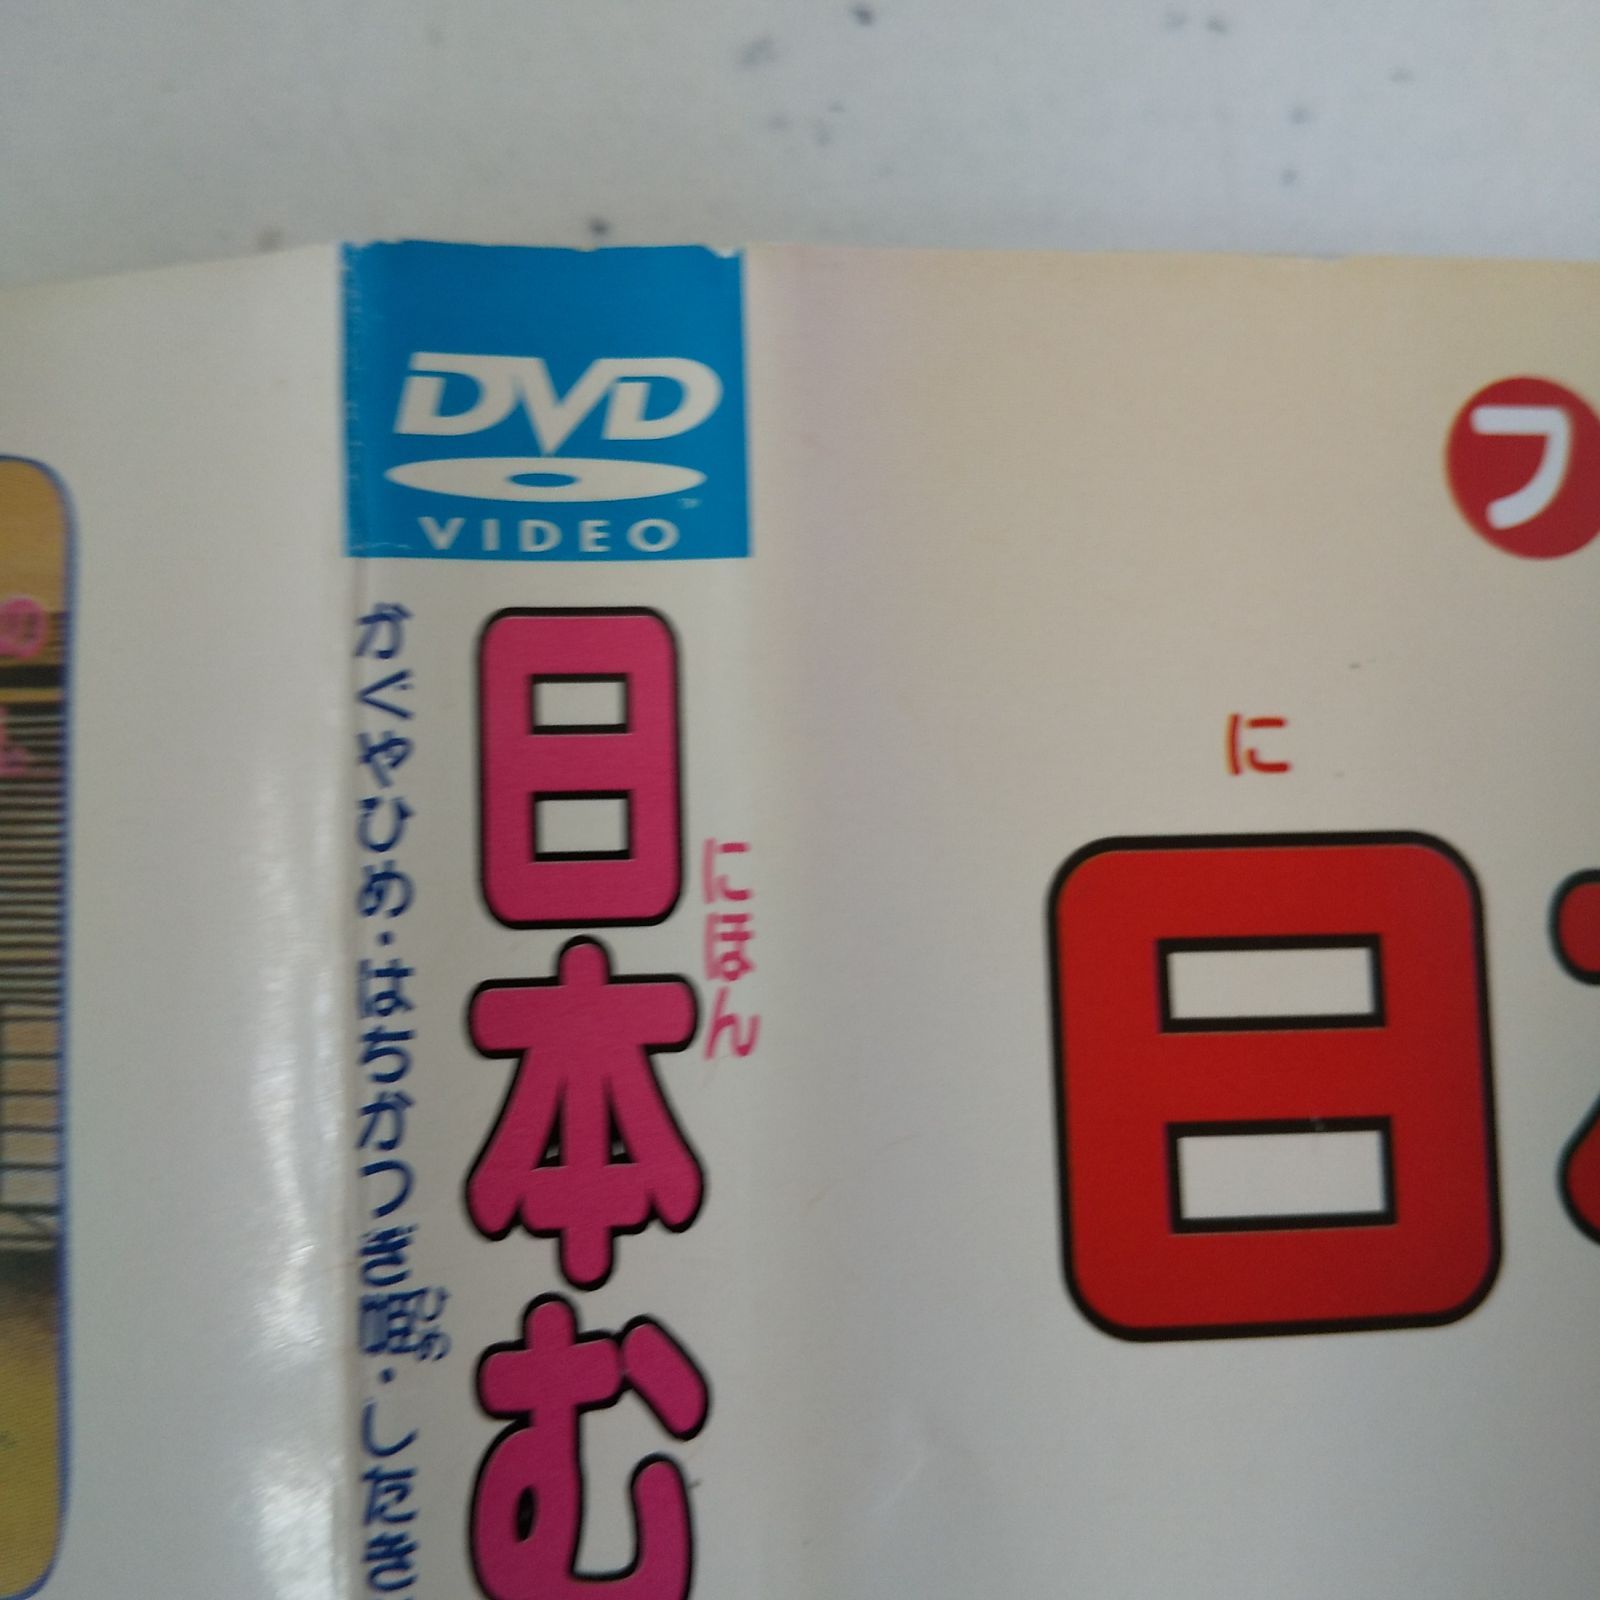 日本むかし話 2巻 レンタル落ち 中古 DVD ケース付き - 世界の